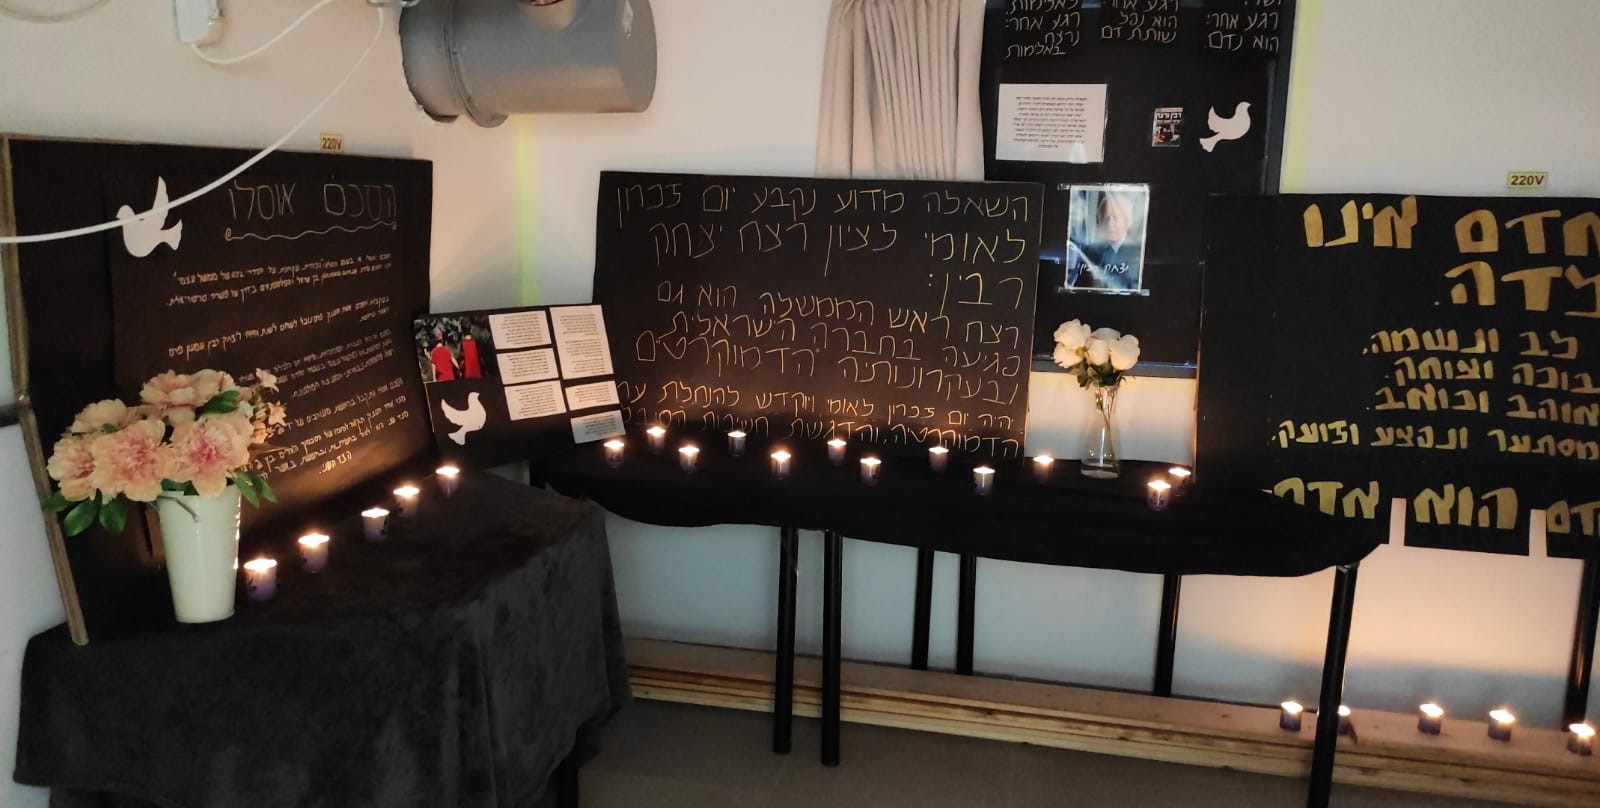 תוצר הפעילות החינוכית בנושא רצח רבין בפנימיית דארנא בה מתנדבים שינשינים של התנועה הקיבוצית